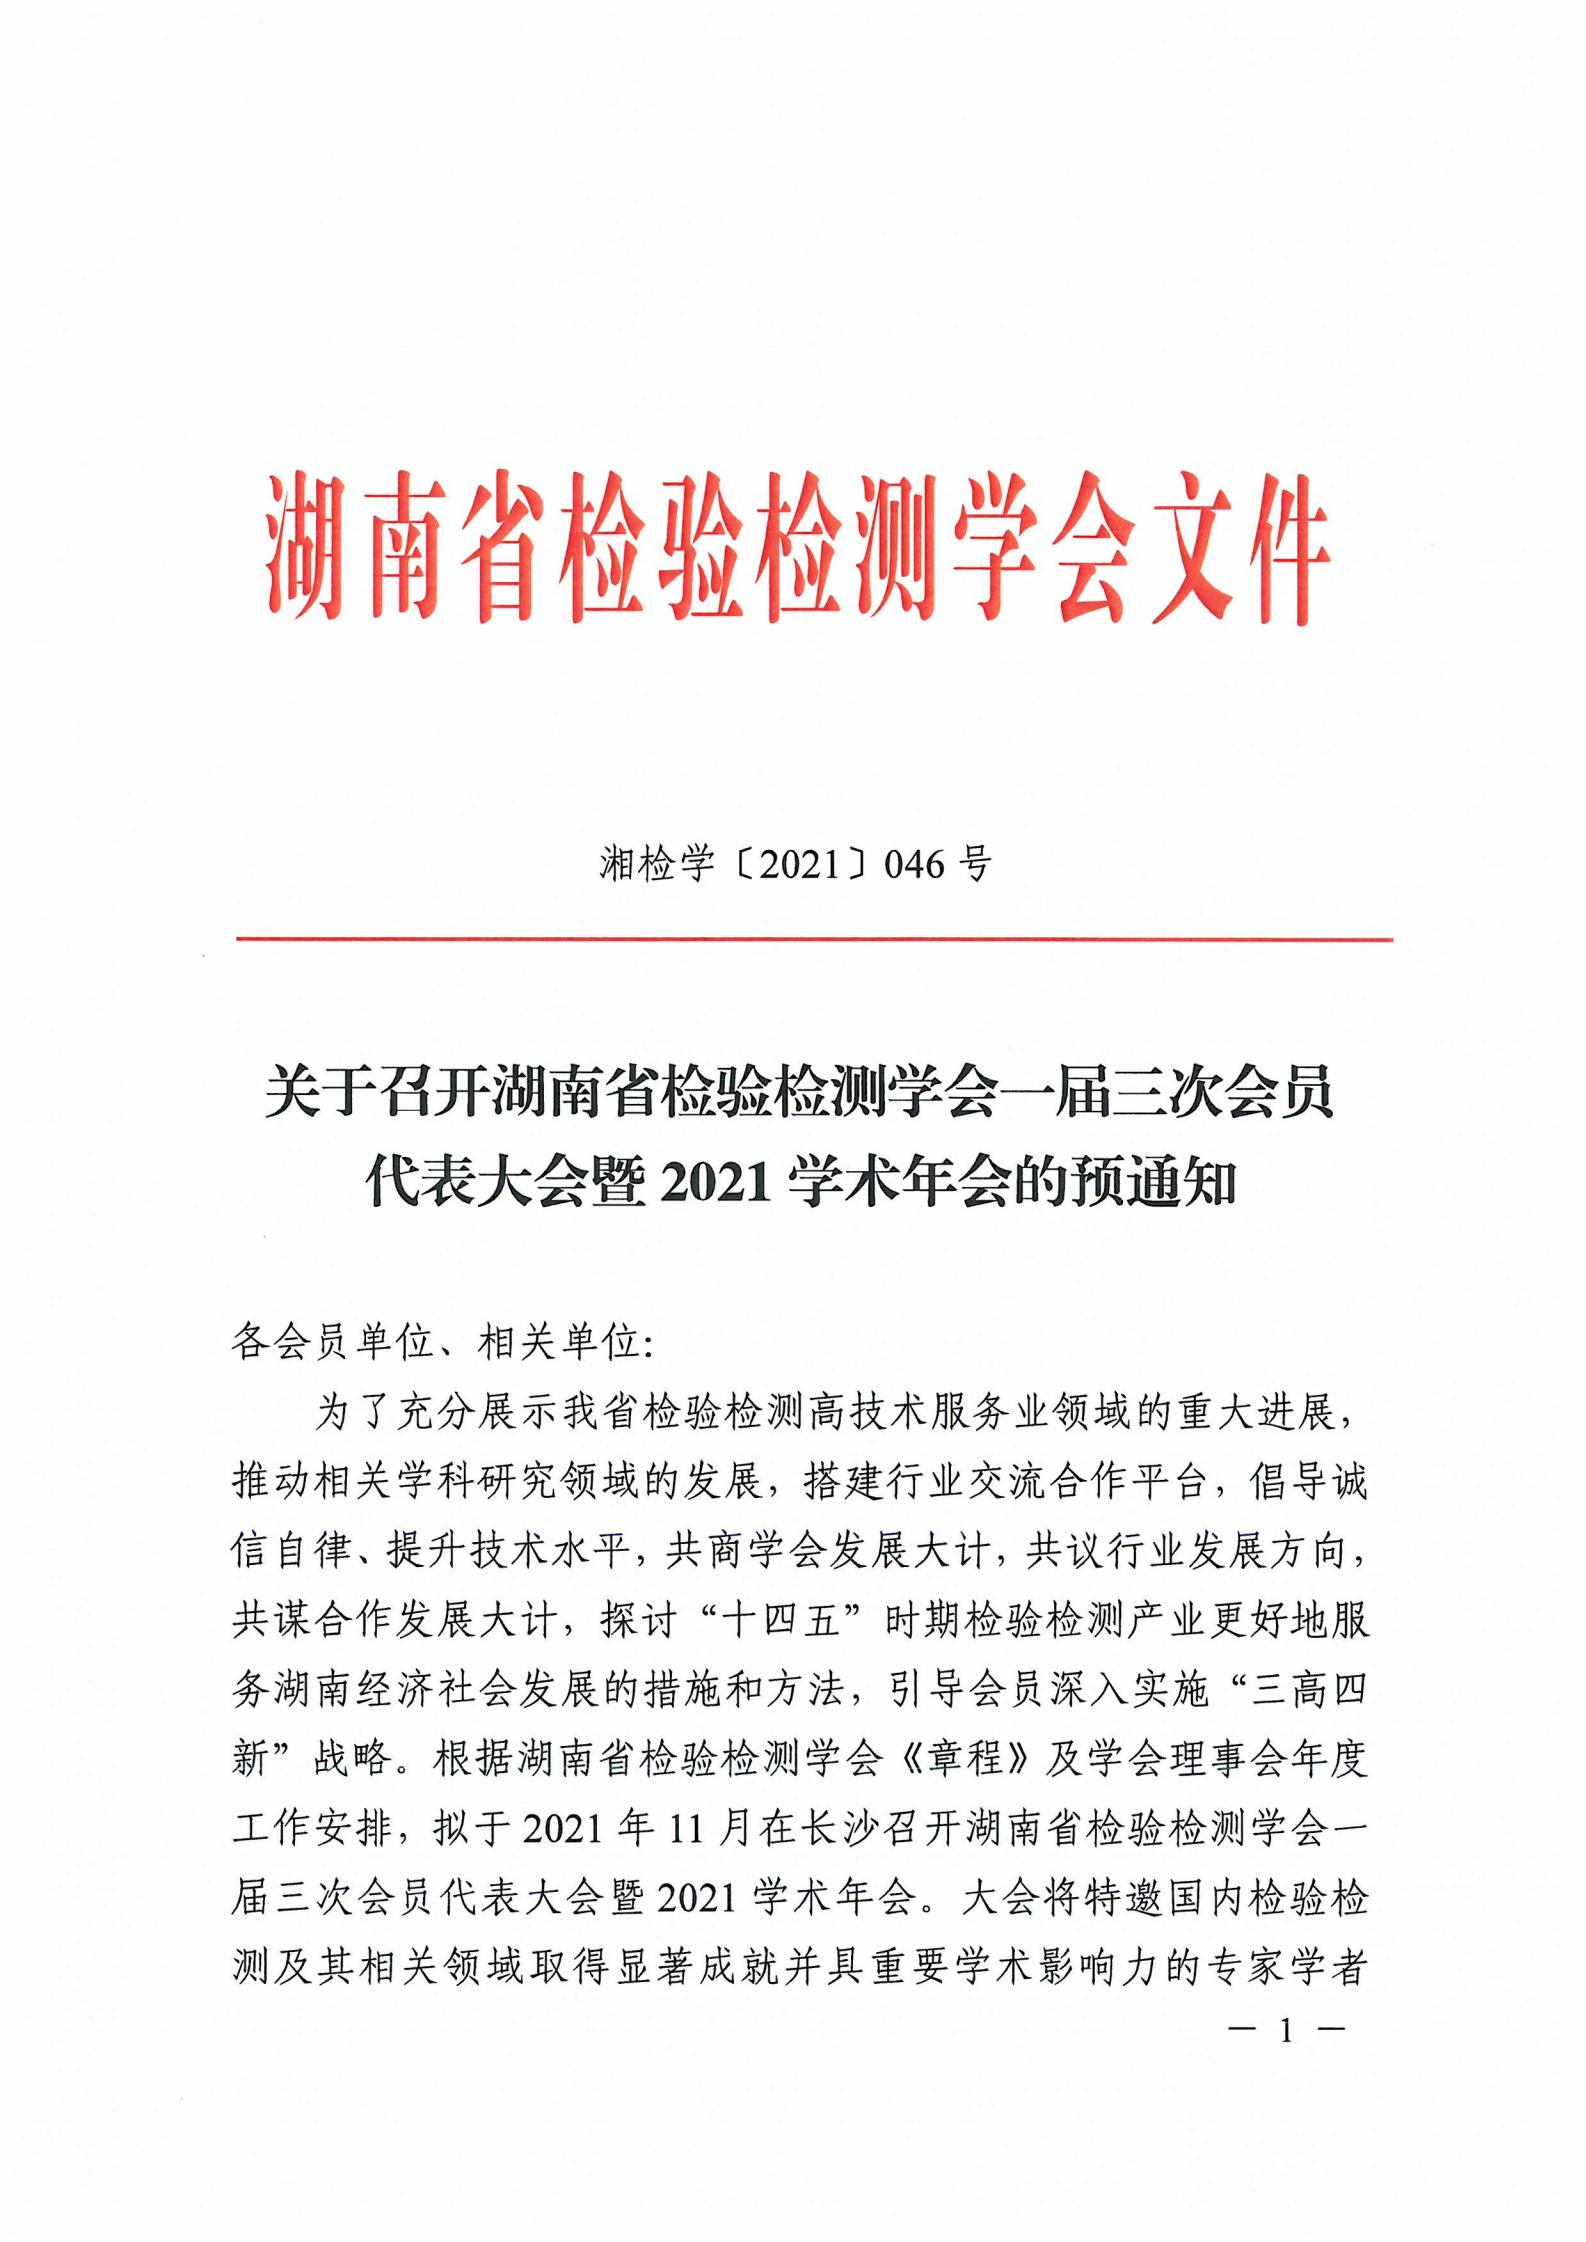 【会议通知】关于召开湖南省检验检测学会一届三次会员代表大会暨2021学术年会的预通知(图1)